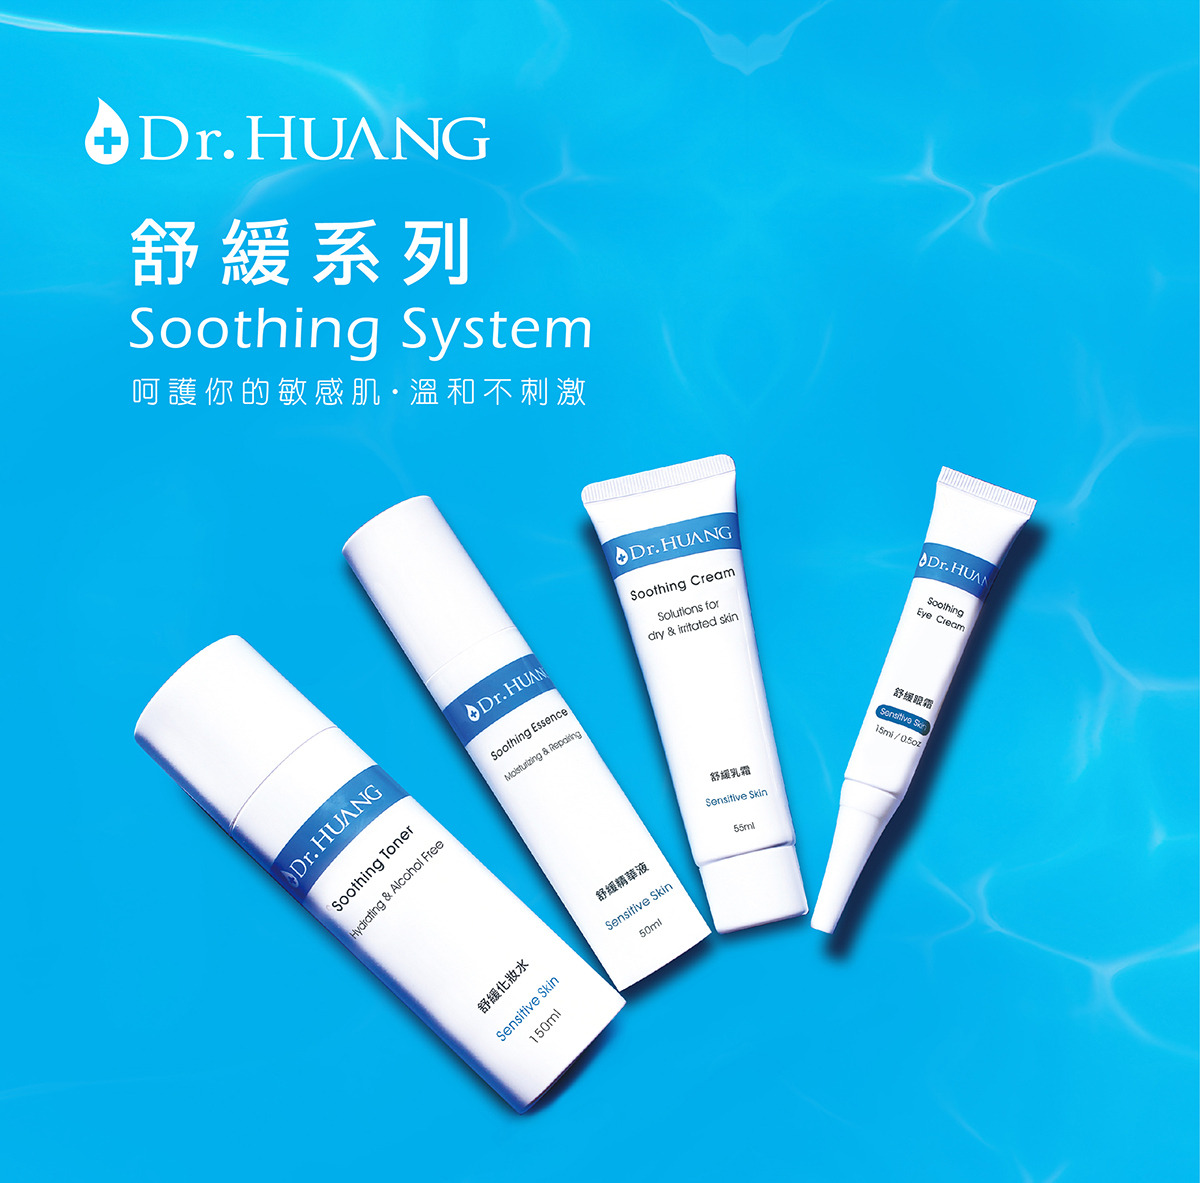 Dr.huang 舒緩乳霜